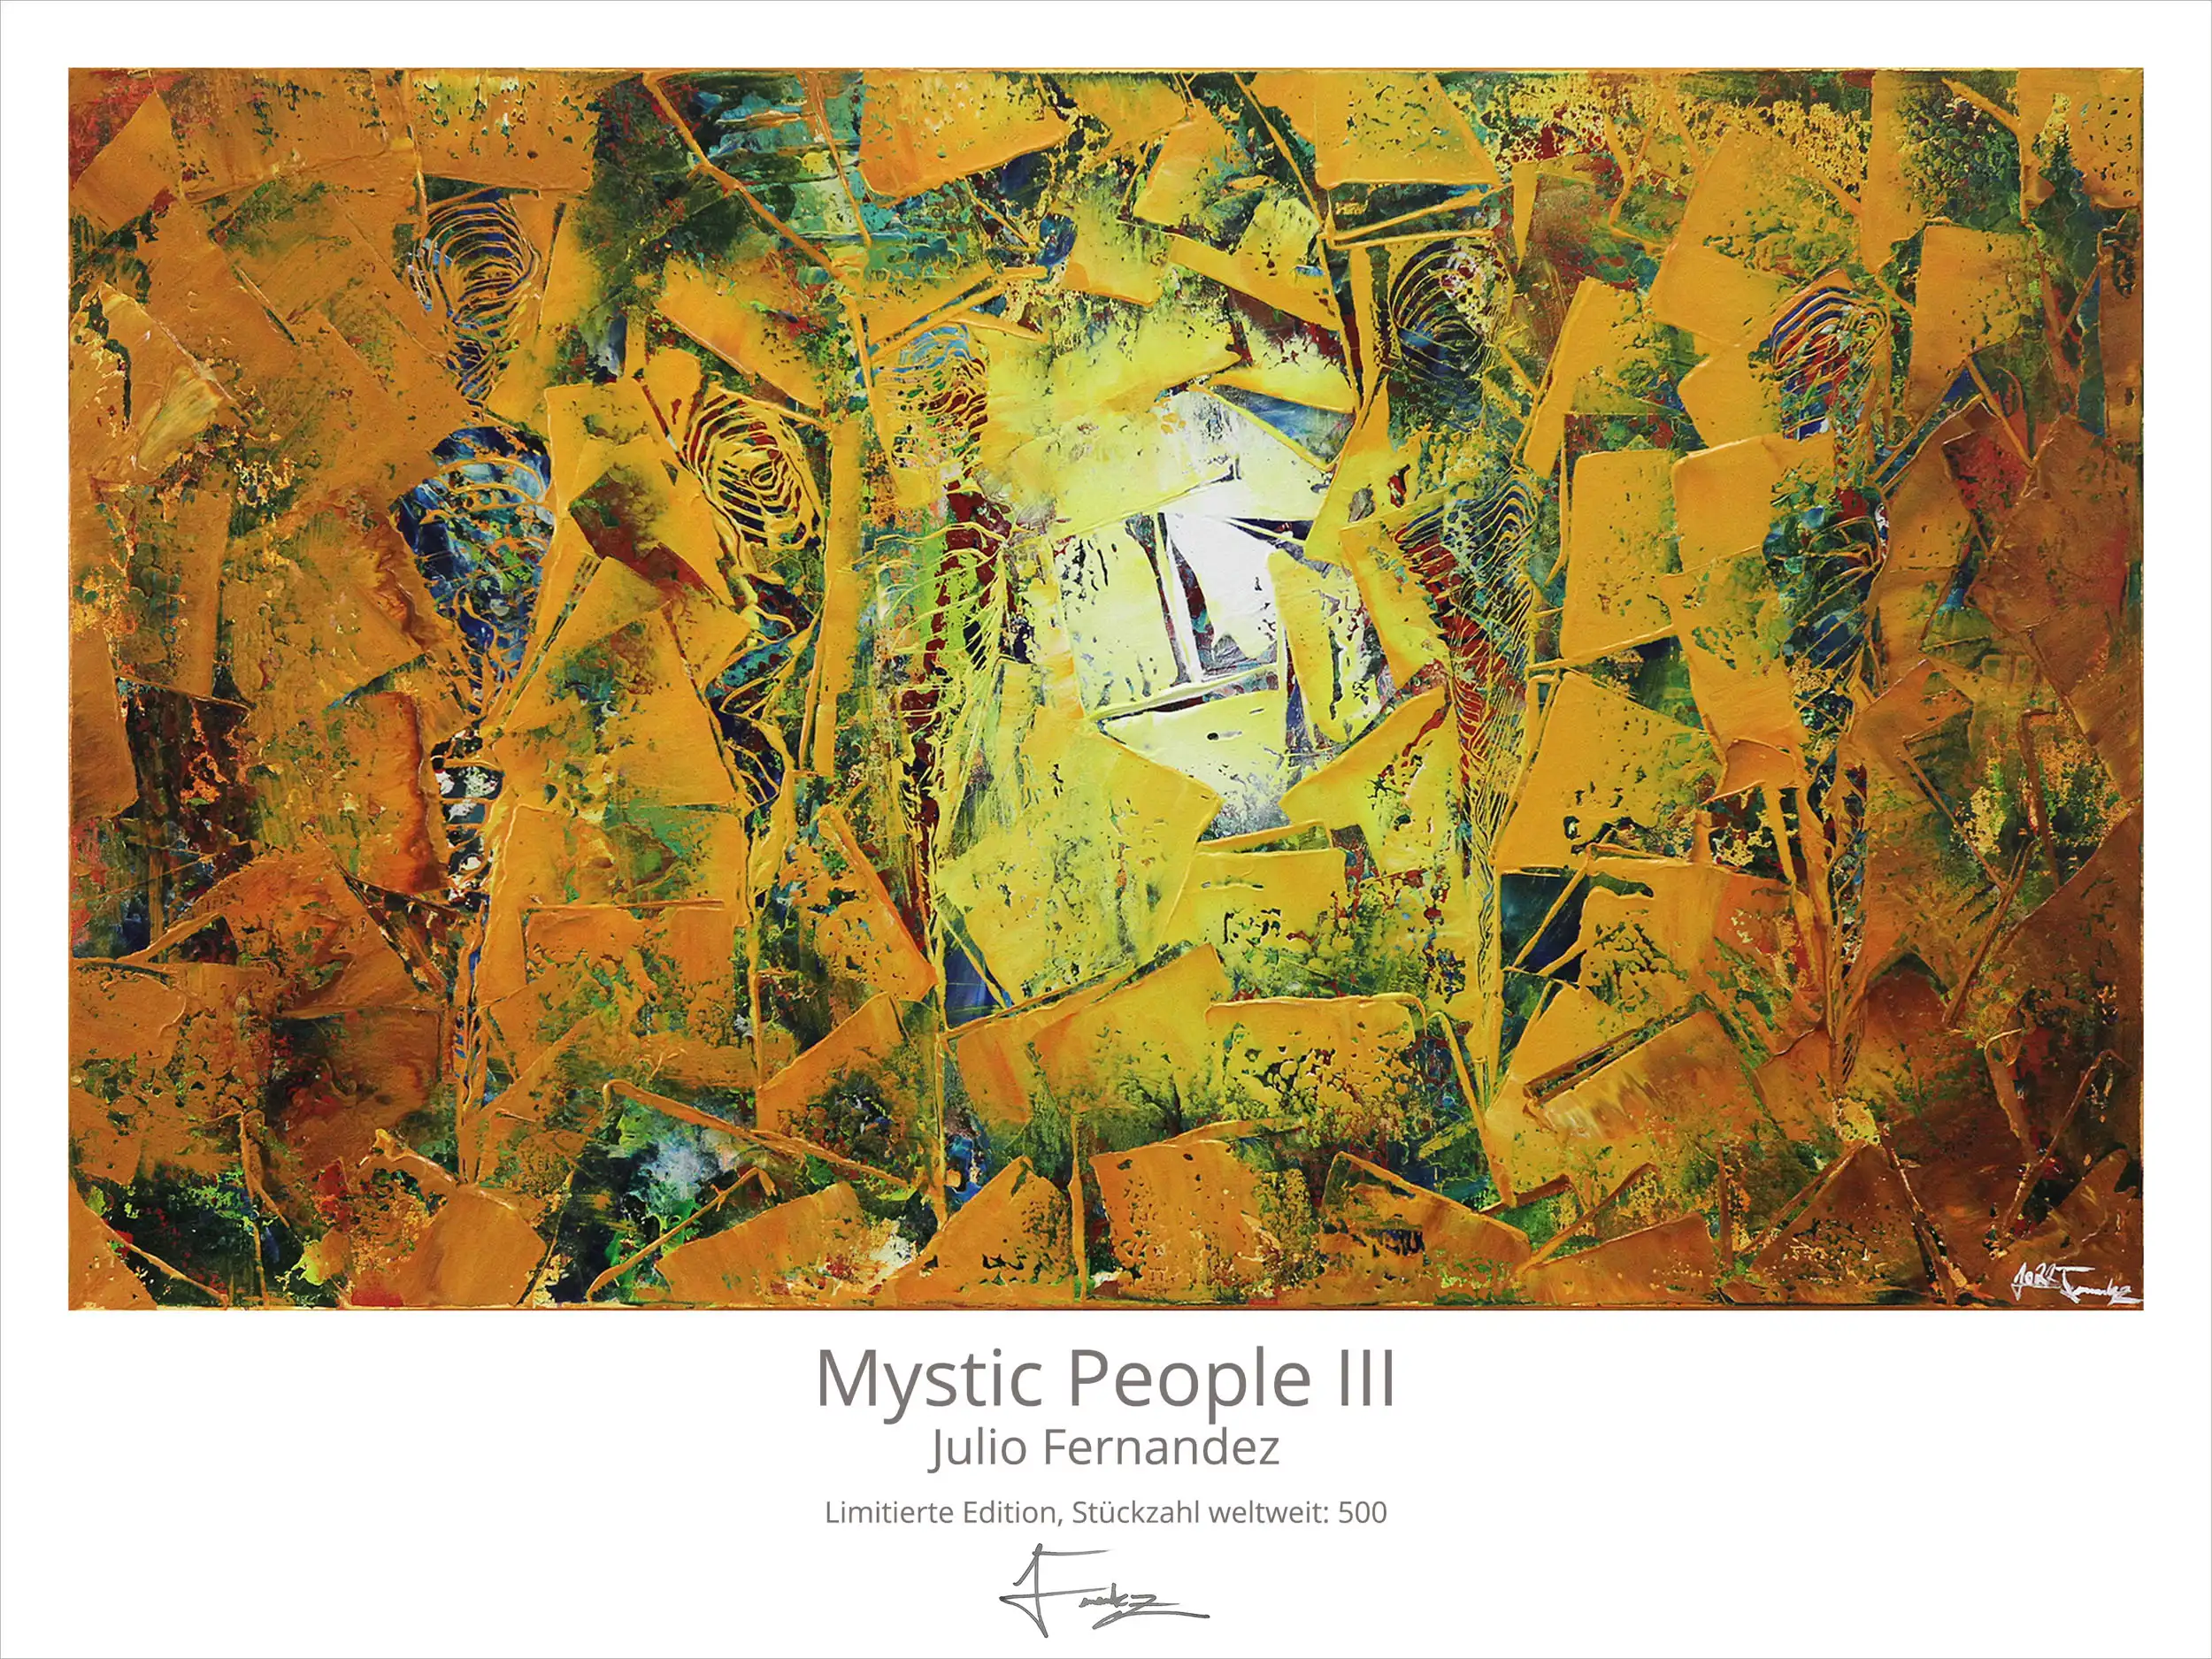 Limitierte Edition auf Papier, J. Fernandez "Mystic People III", Fineartprint, Kollektion E&K